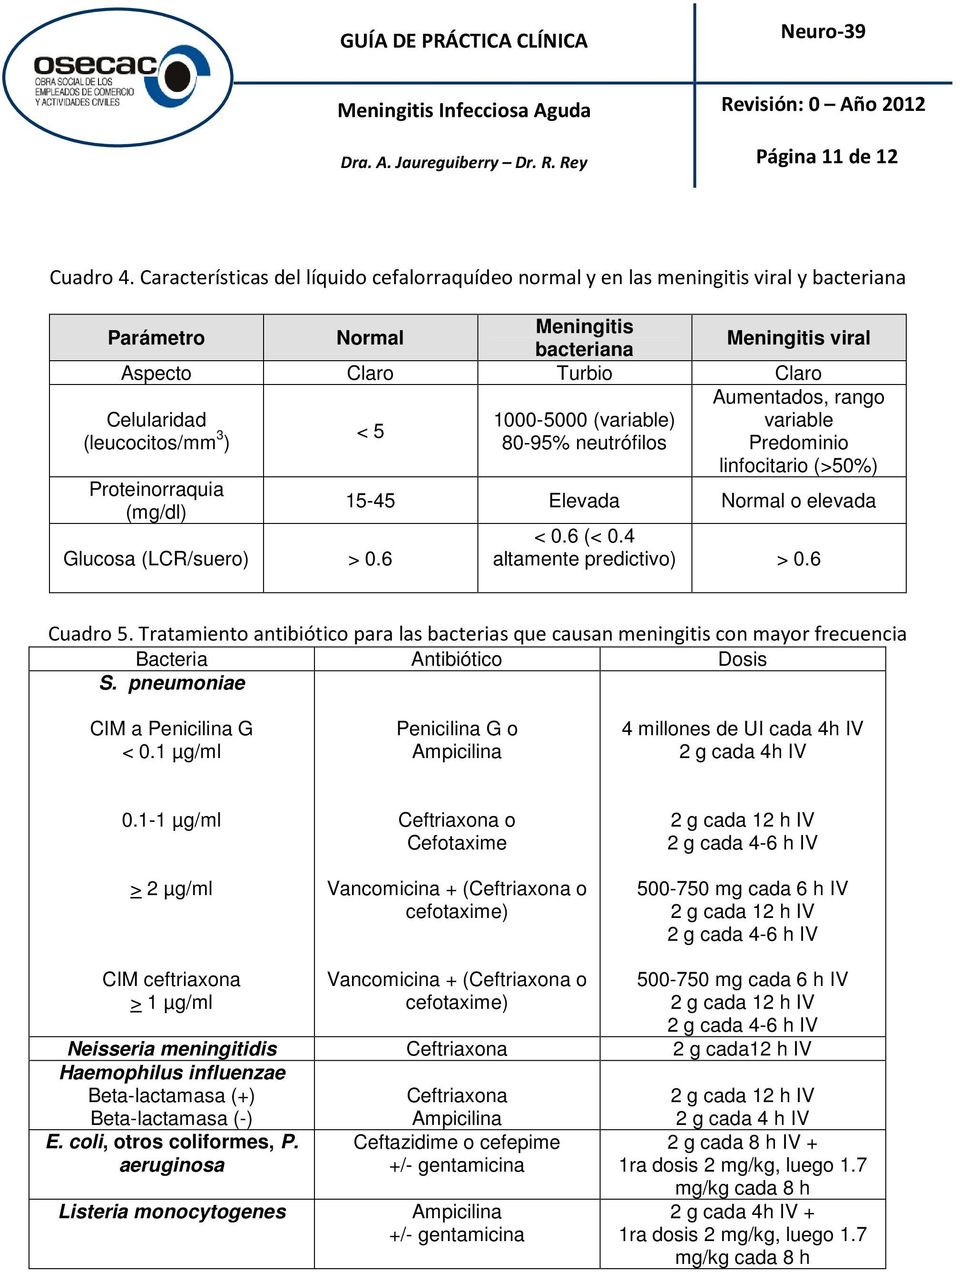 Celularidad 1000-5000 (variable) variable (leucocitos/mm 3 < 5 ) 80-95% neutrófilos Predominio linfocitario (>50%) Proteinorraquia (mg/dl) Glucosa (LCR/suero) > 0.6 15-45 Elevada Normal o elevada < 0.